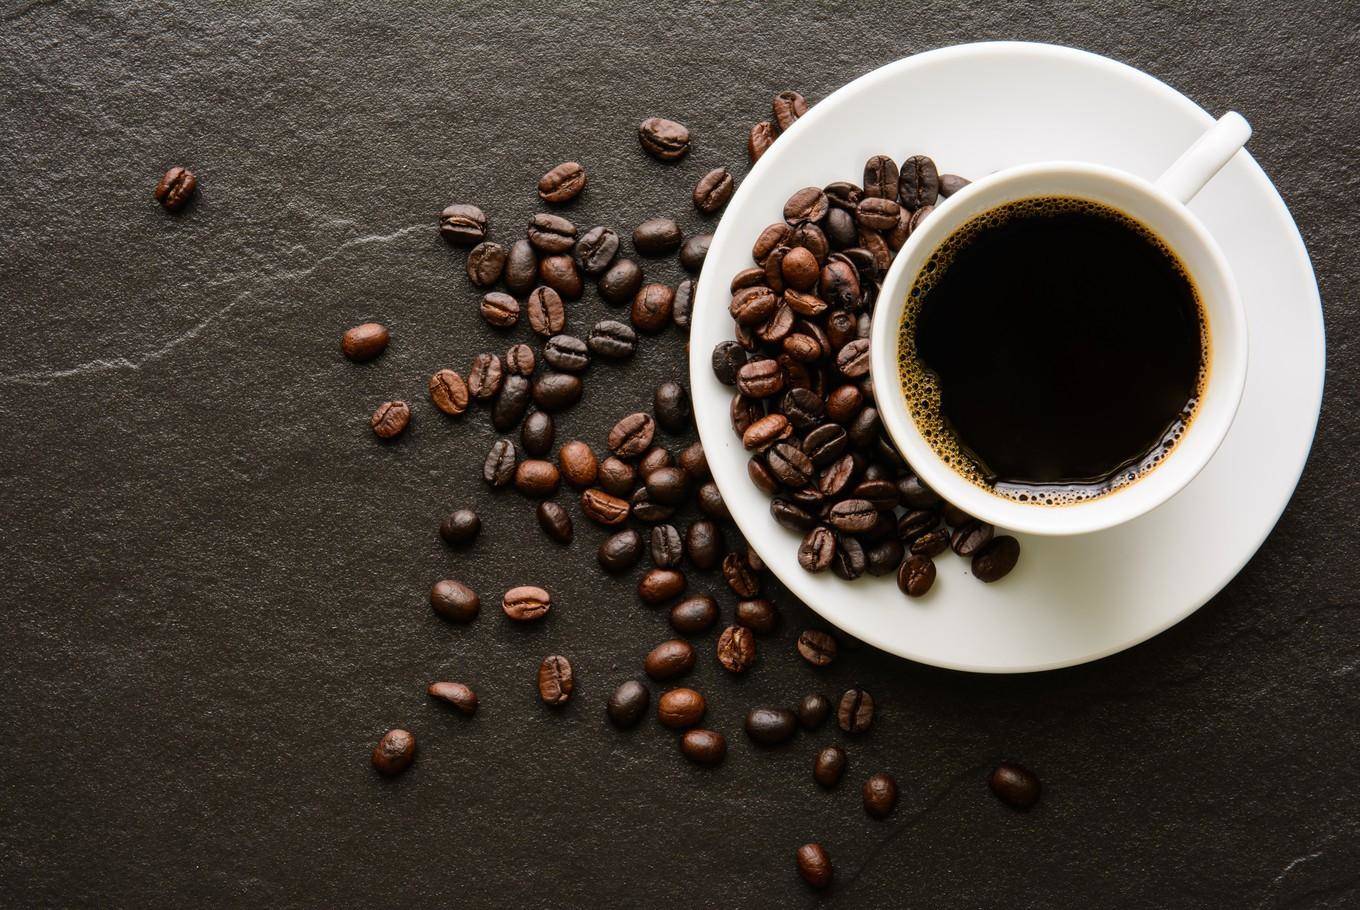 धरती का बढ़ता तापमान, बिगाड़ रहा कॉफी की उत्पादक क्षमता को